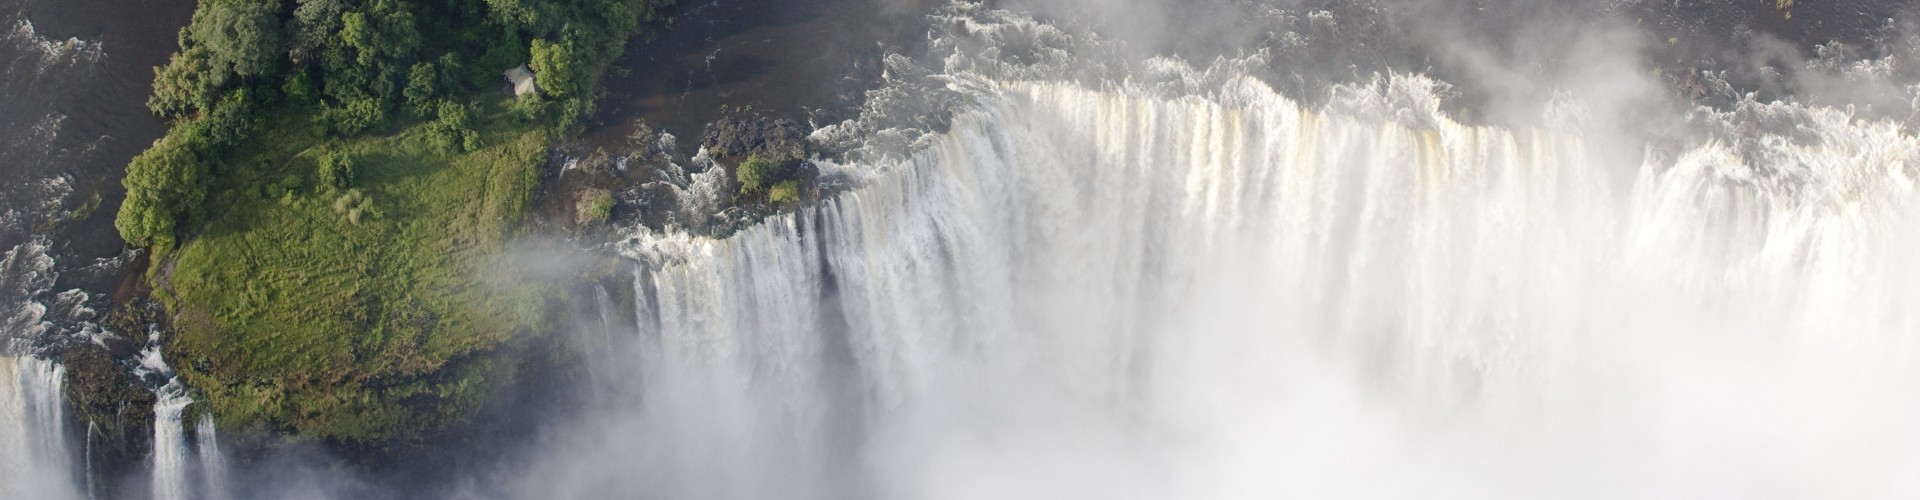 Livingstone Island, Victoria Falls, Zambia